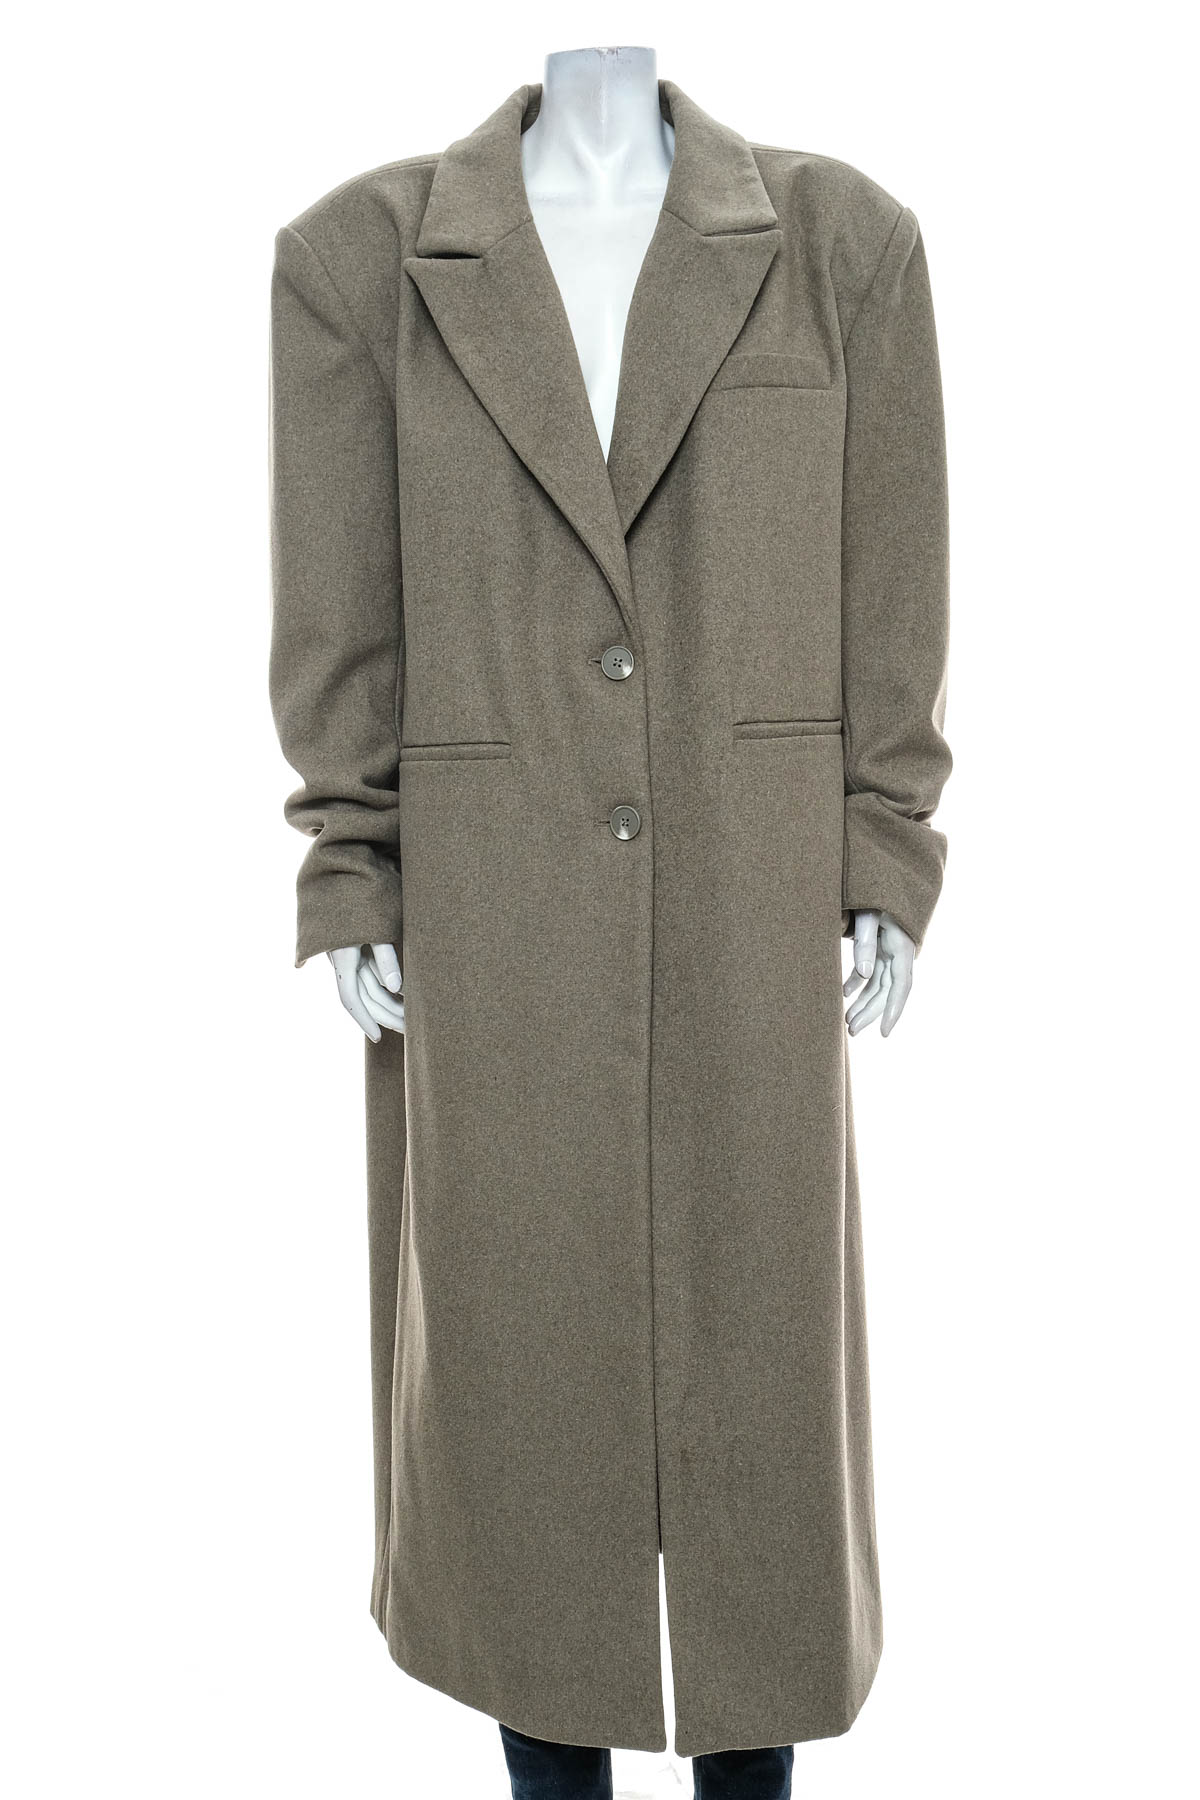 Women's coat - Josefine HJ x NA-KD - 0